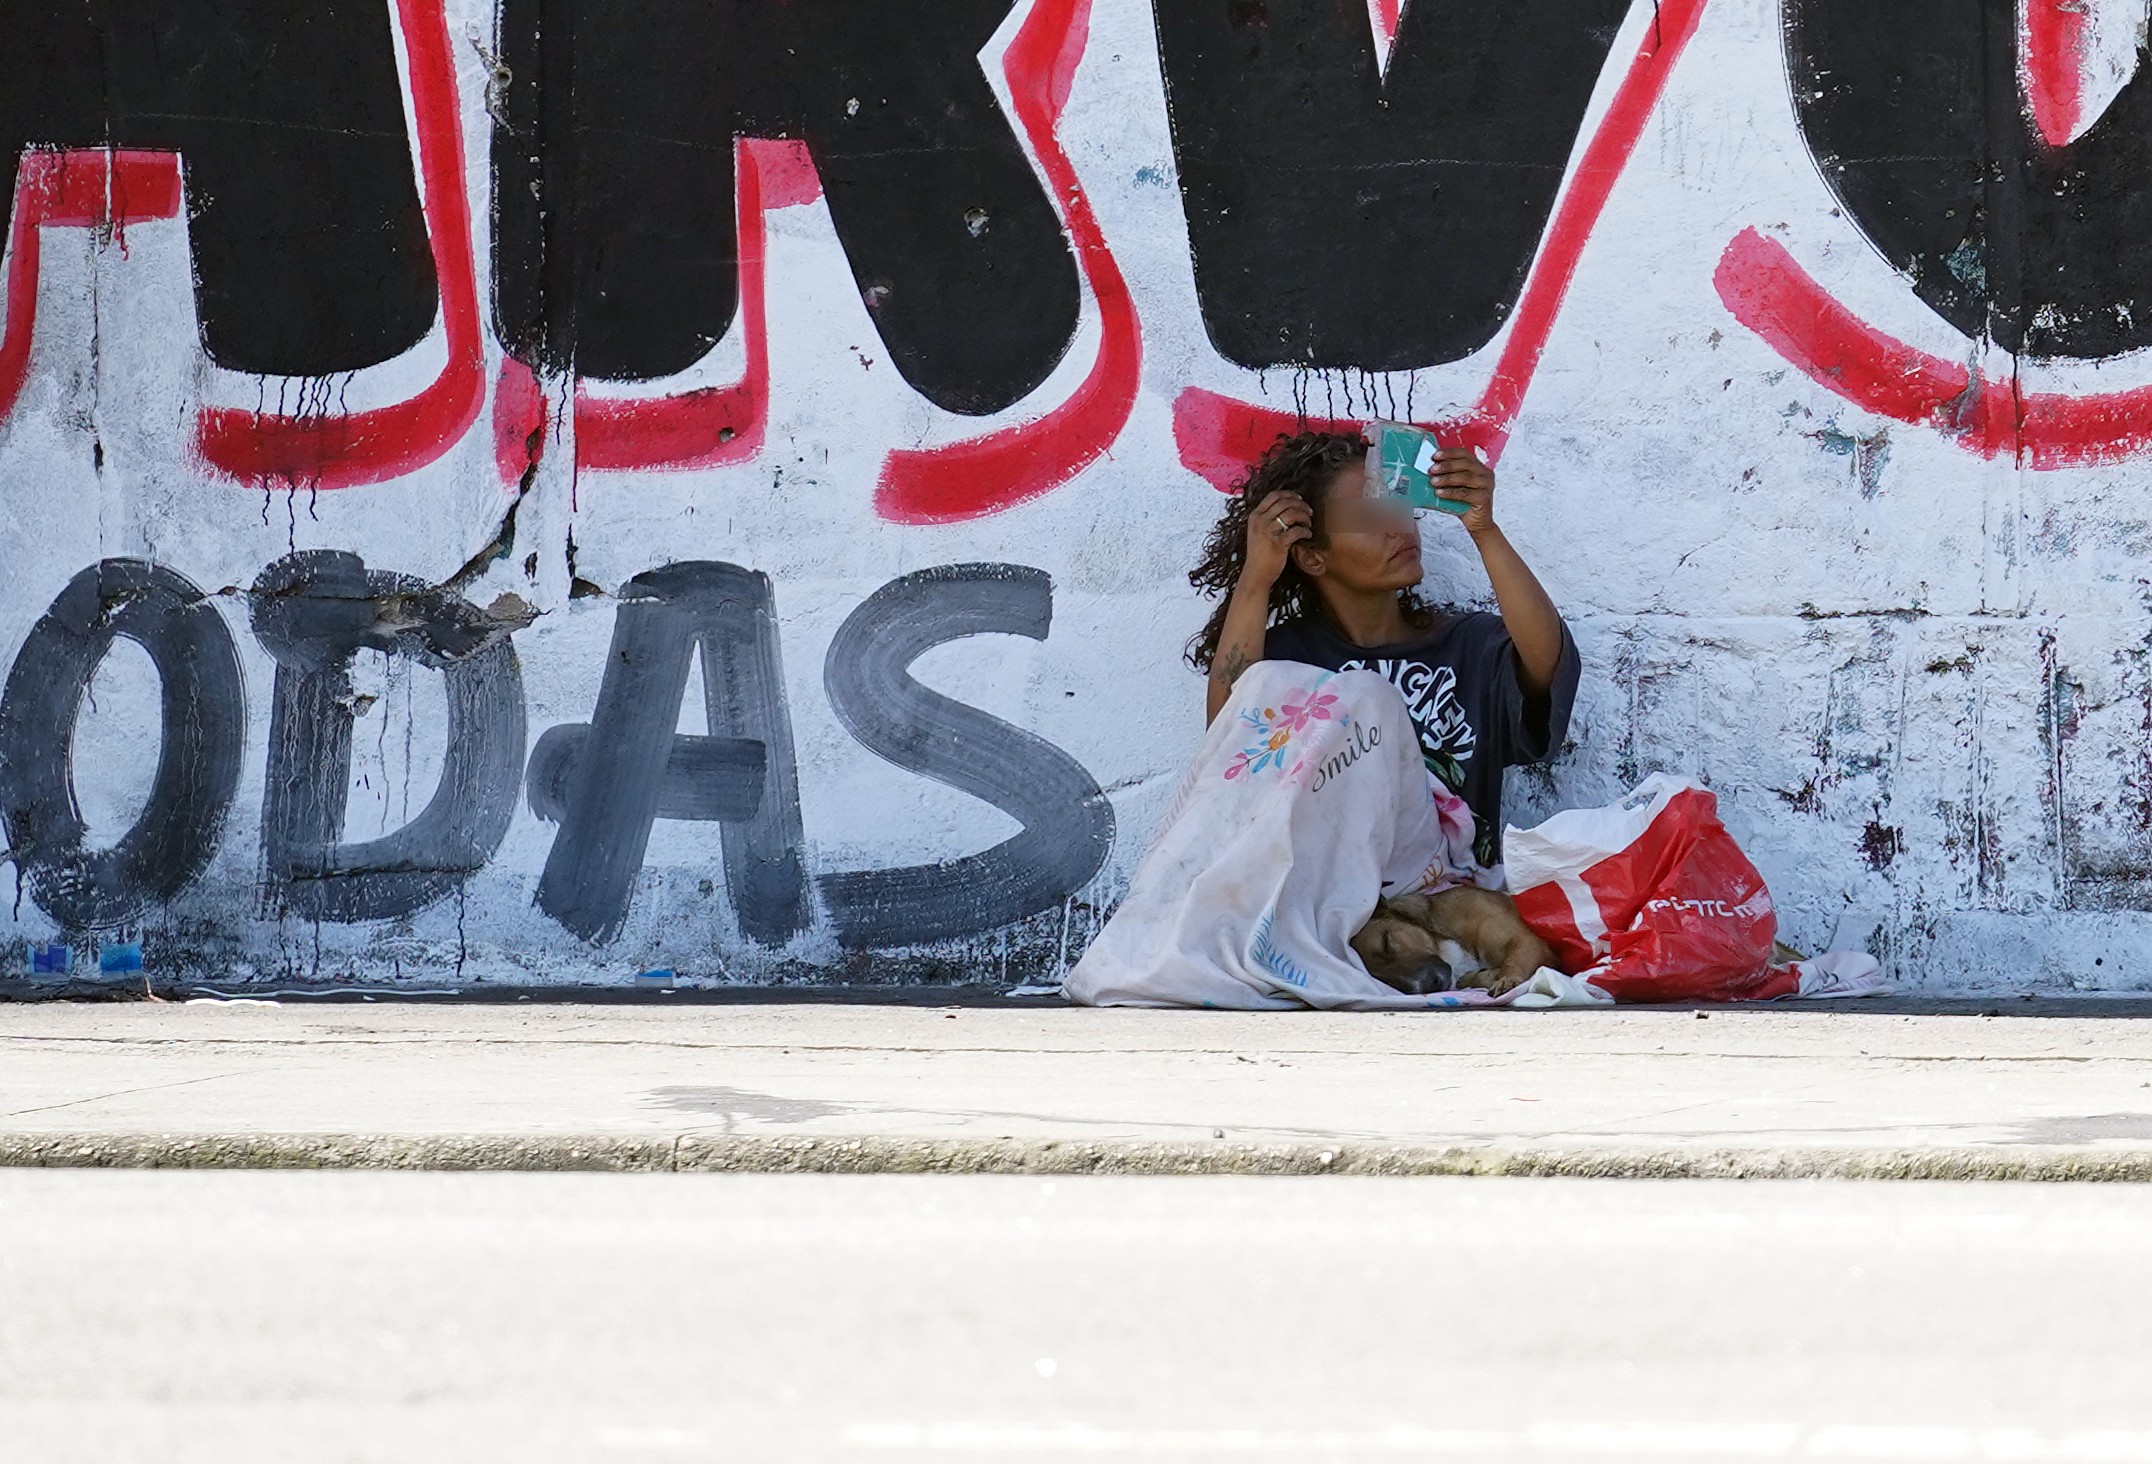 Pobreza social bate recorde e atinge 64,6 milhões de brasileiros durante pandemia, diz estudo